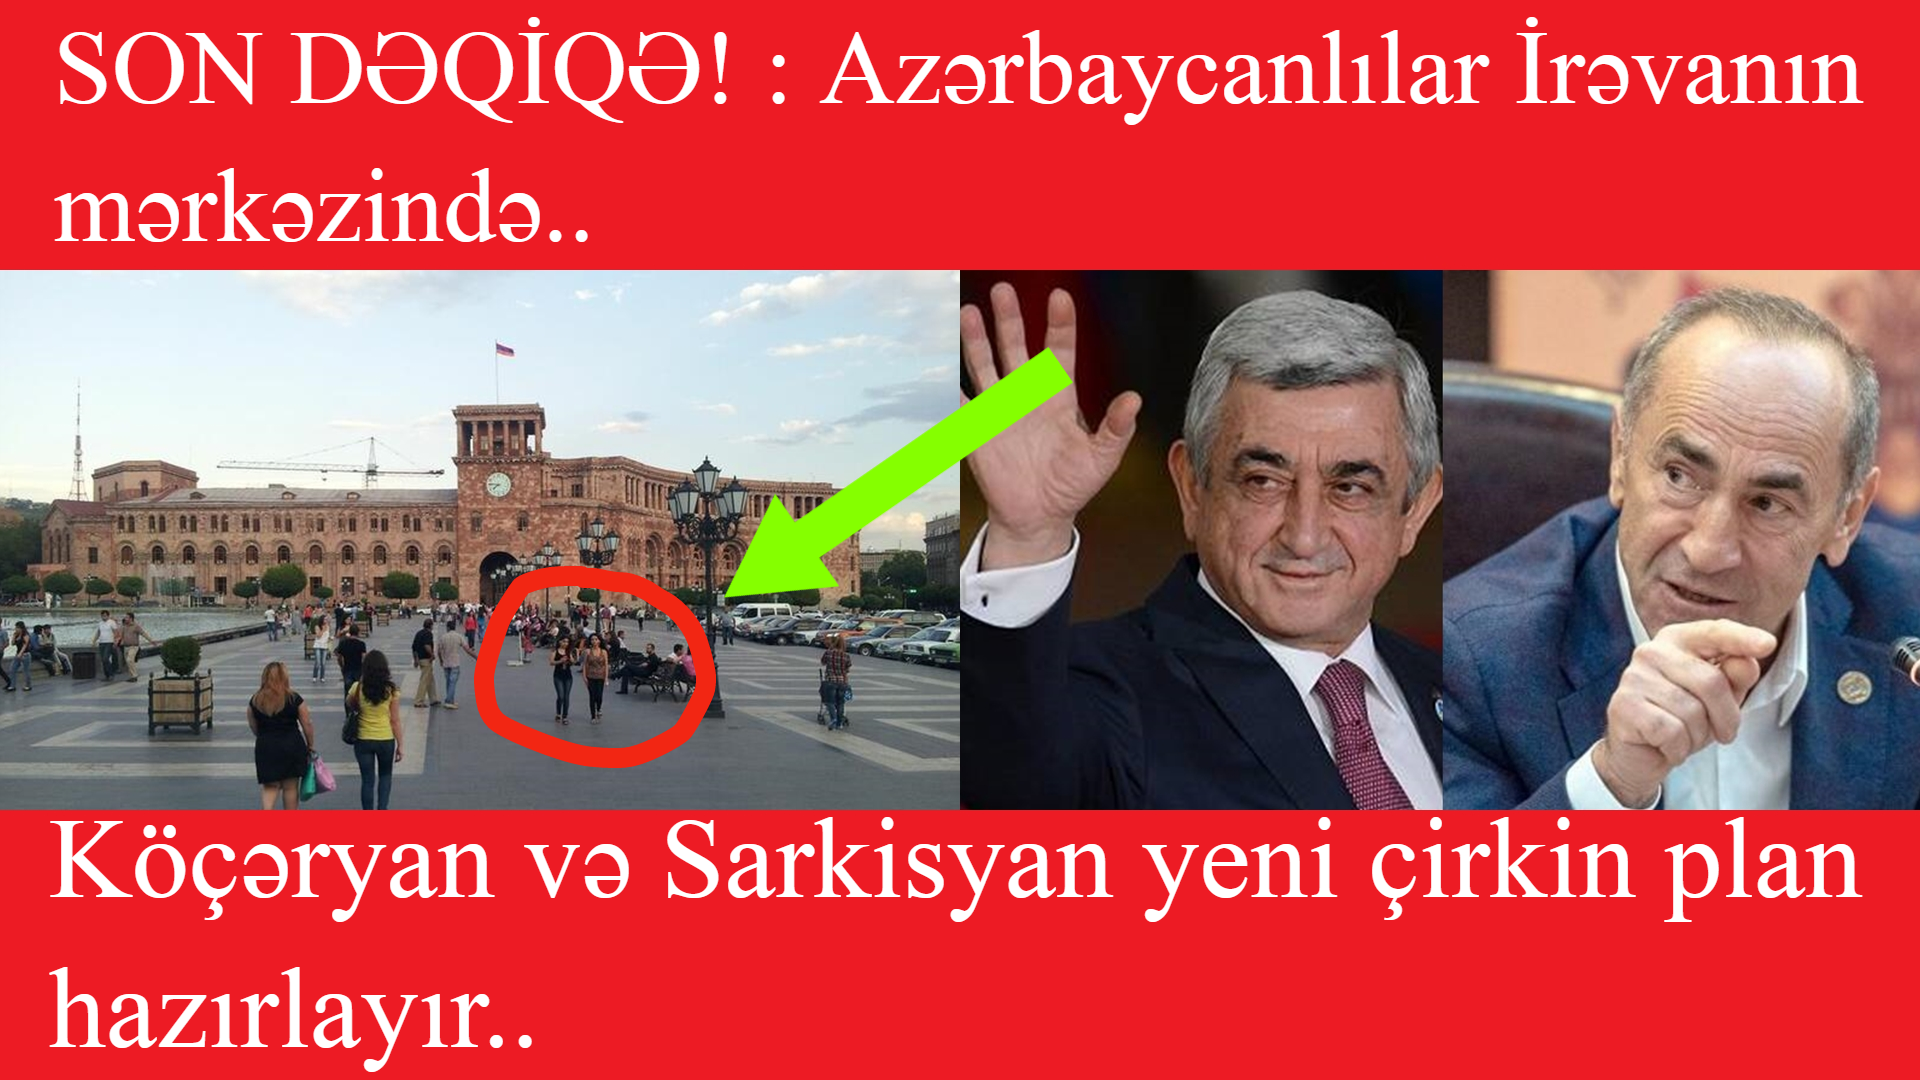 SON DƏQİQƏ : Azərbaycanlılar İrəvanın mərkəzində..